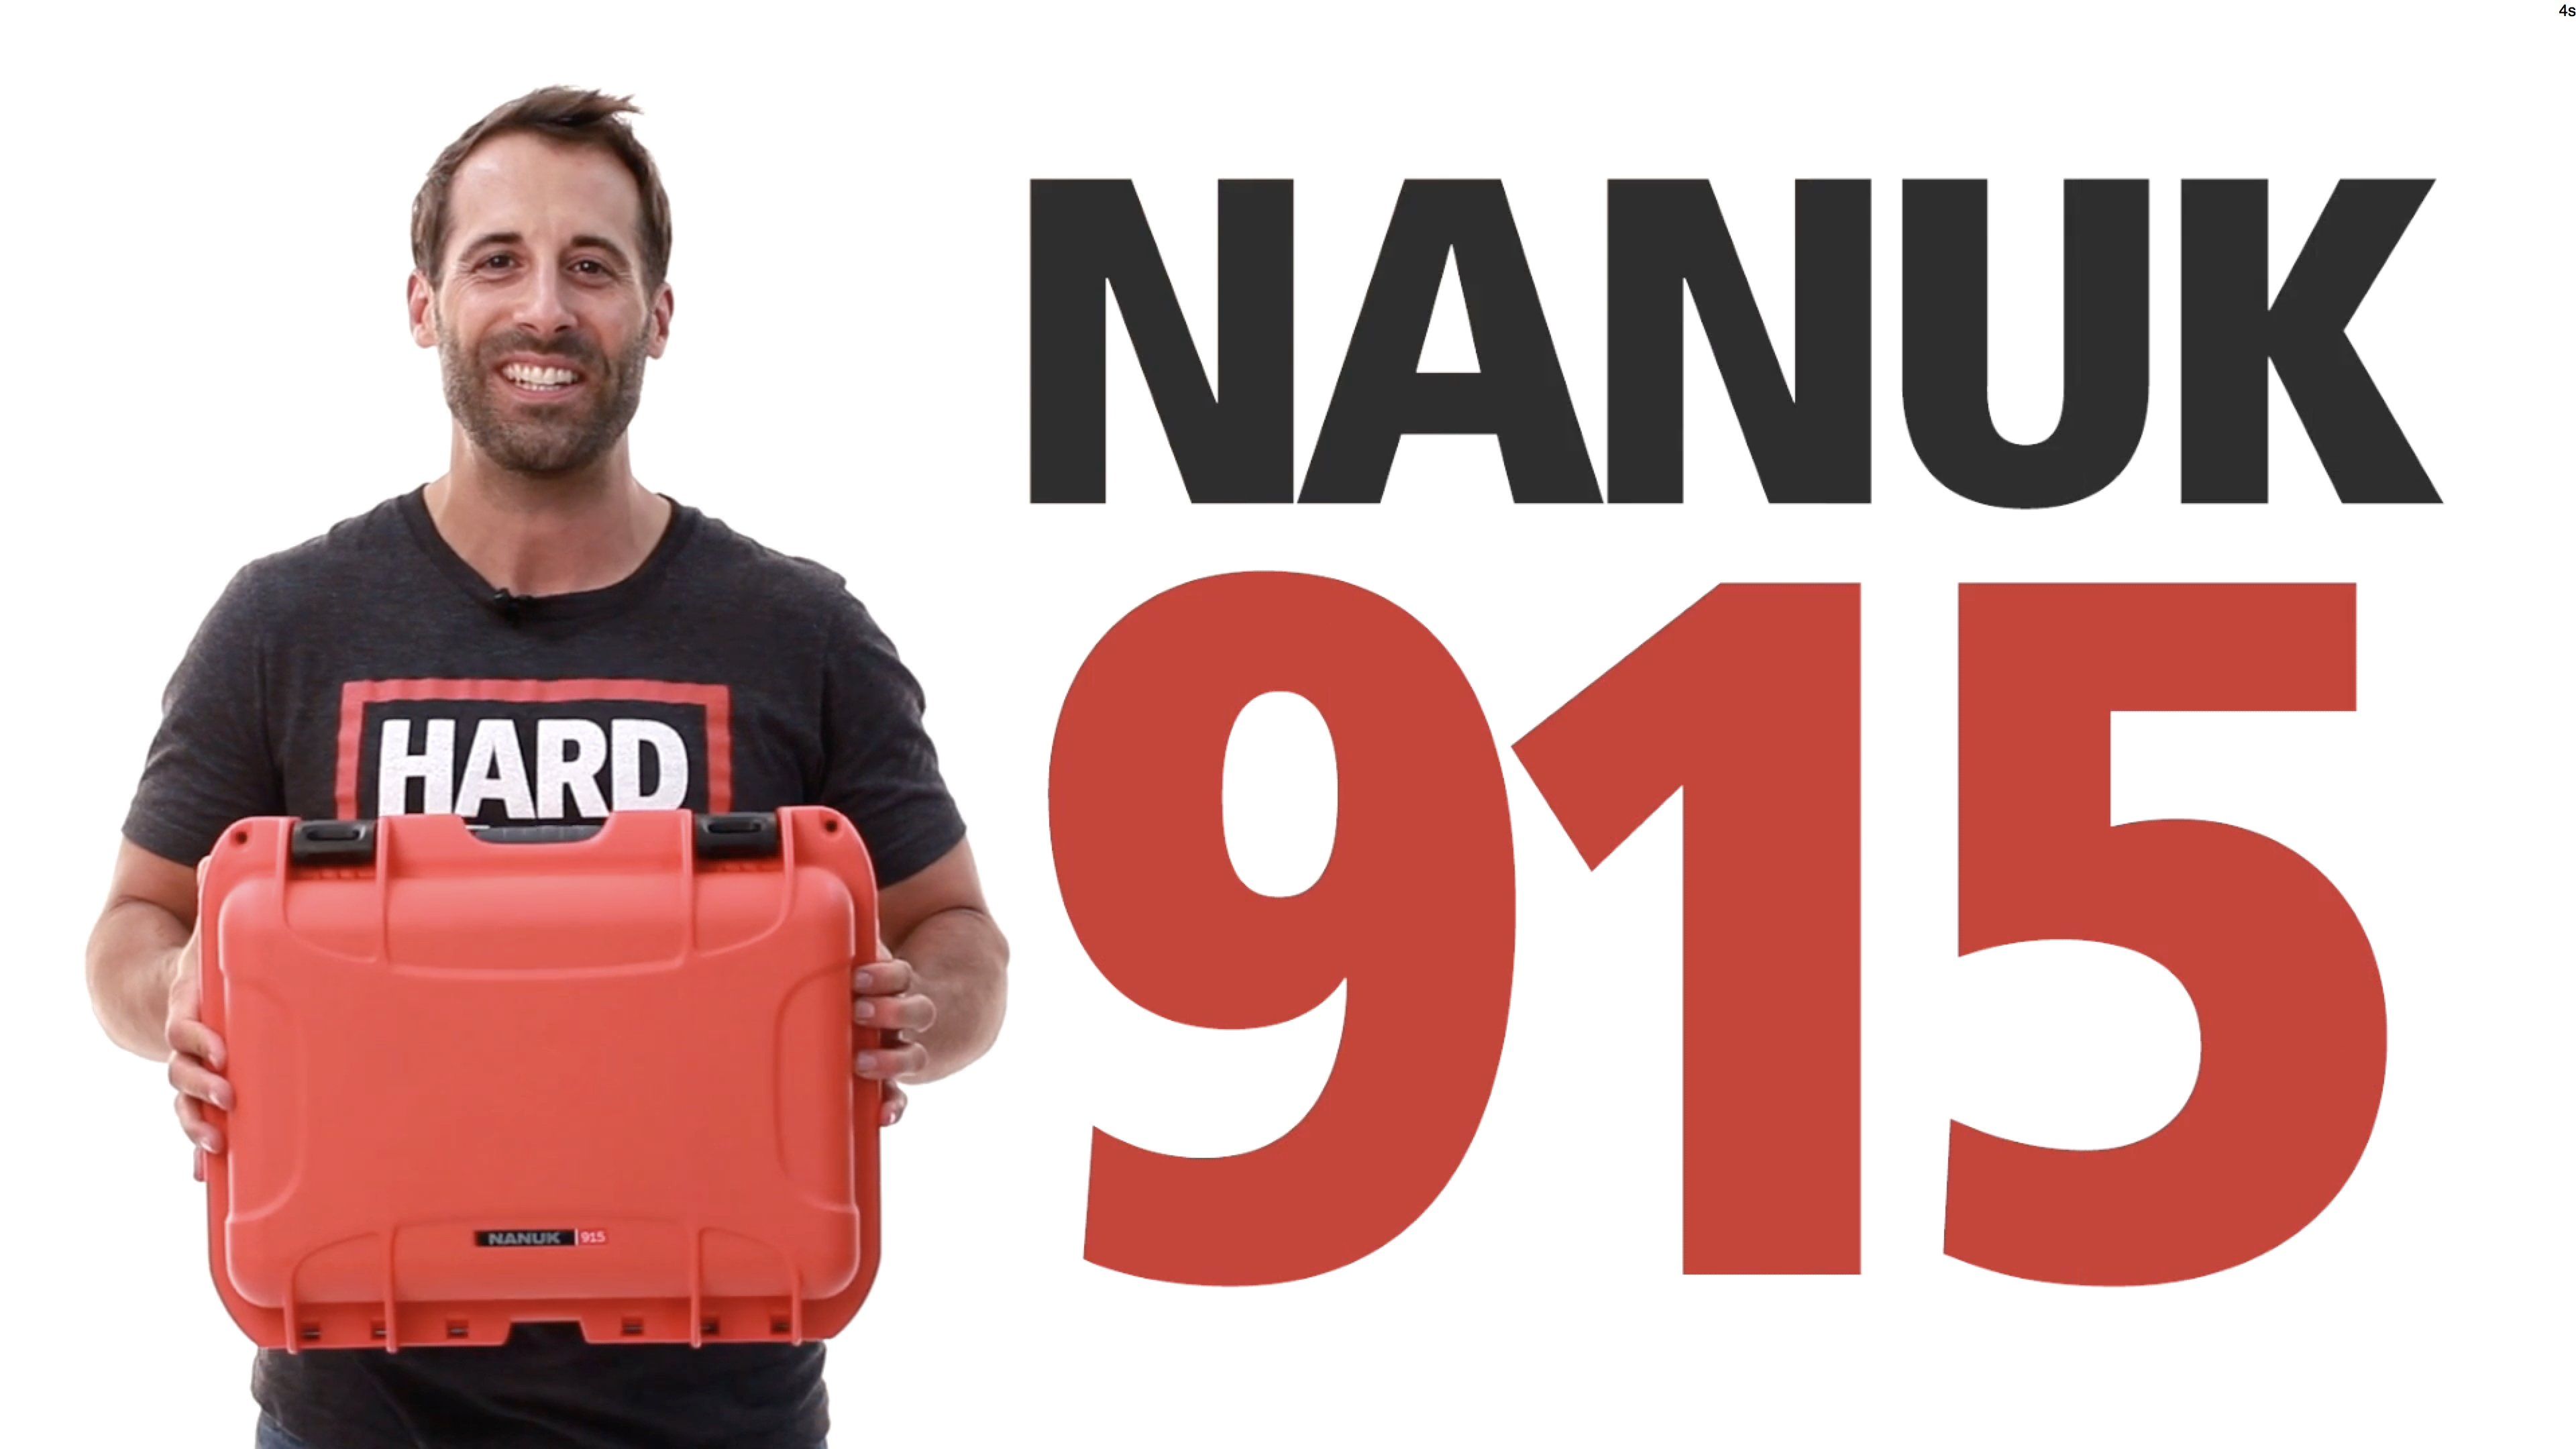 Nanuk 915 Hard Case Video Review